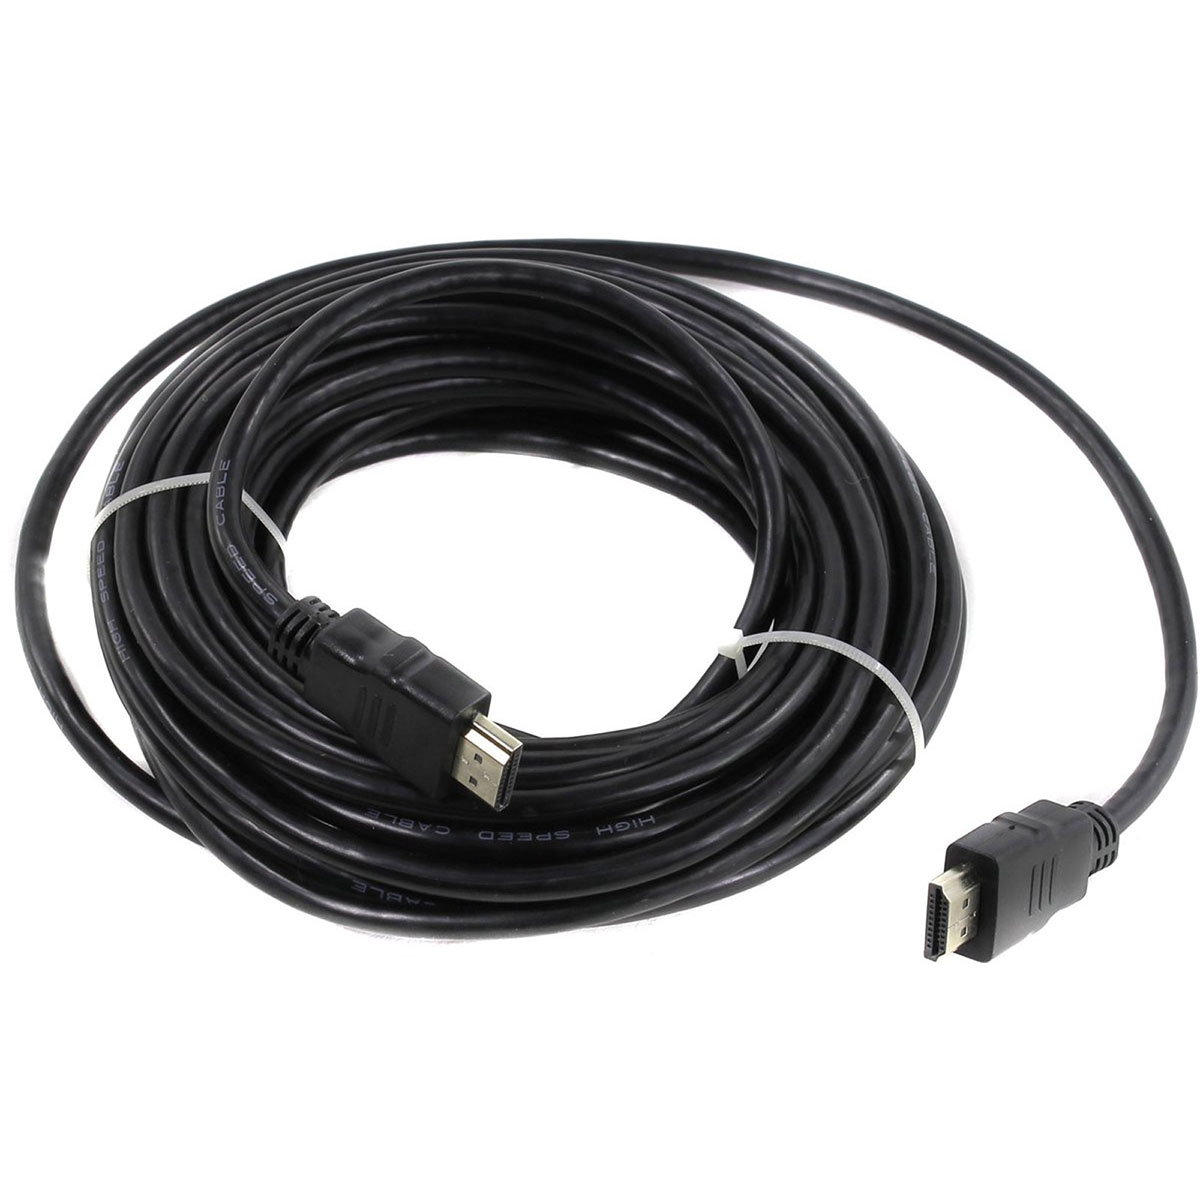 Кабель Smartbuy K-353 HDMI (m) - HDMI (m) 10.0 метров, силиконовая оболочка, ver.2.0, цвет черный.